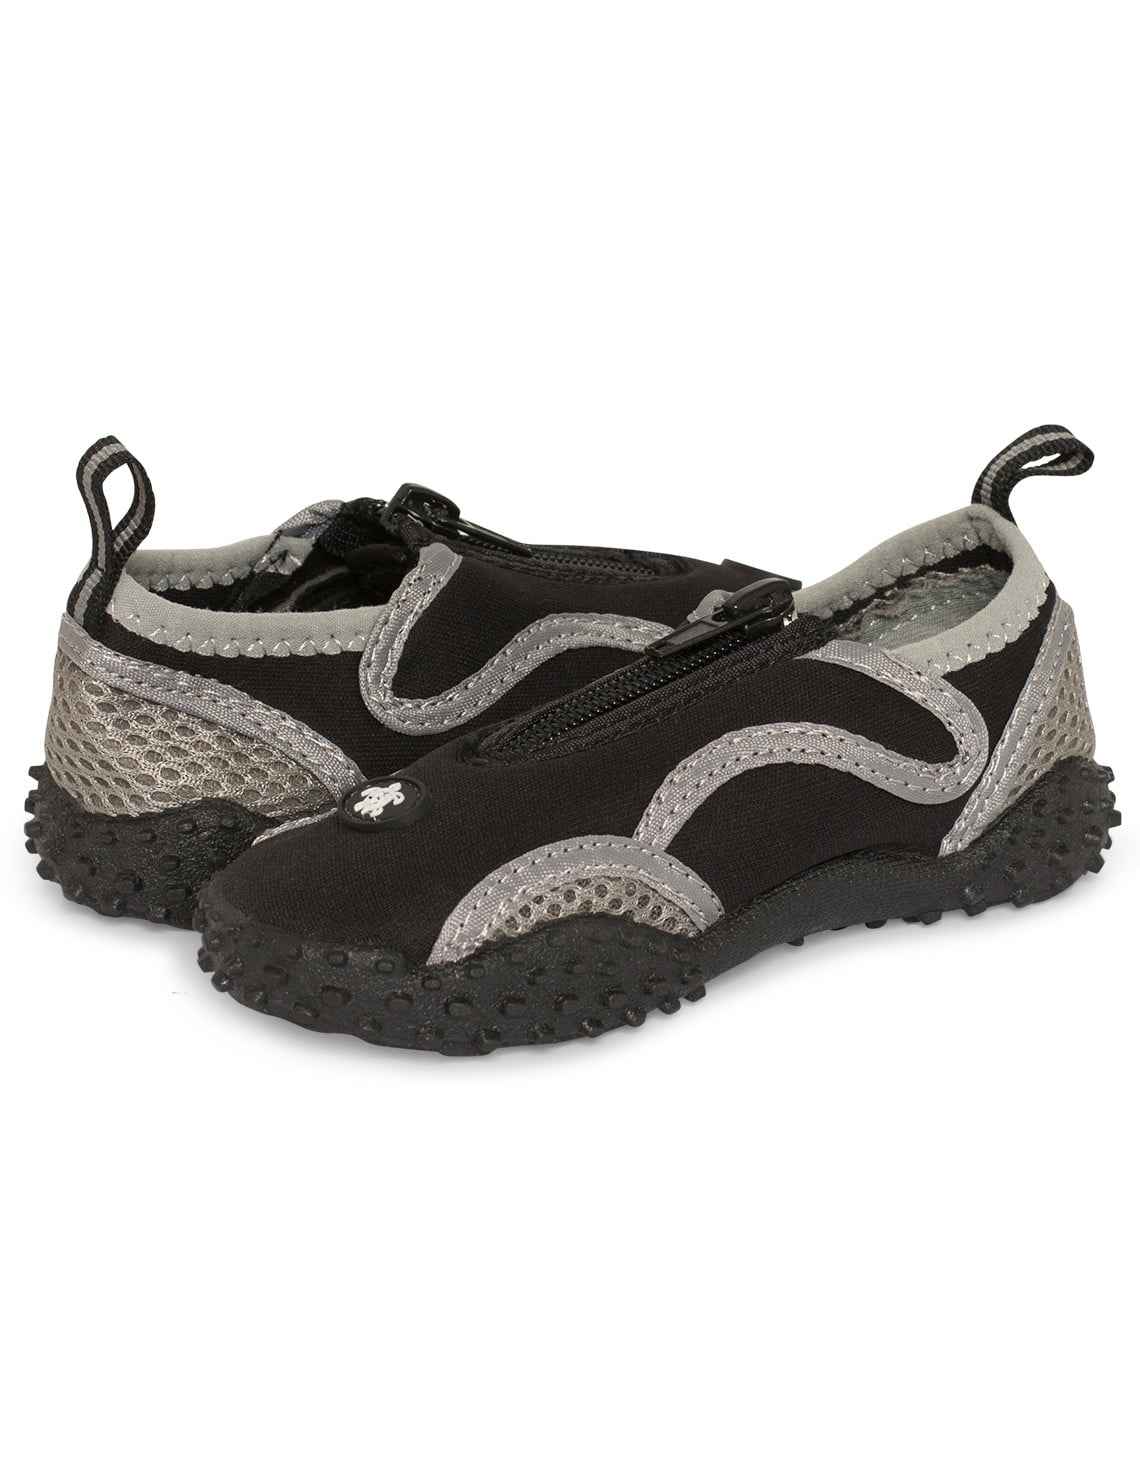 Tuga Kids Water Shoes, Black/Grey, 11 